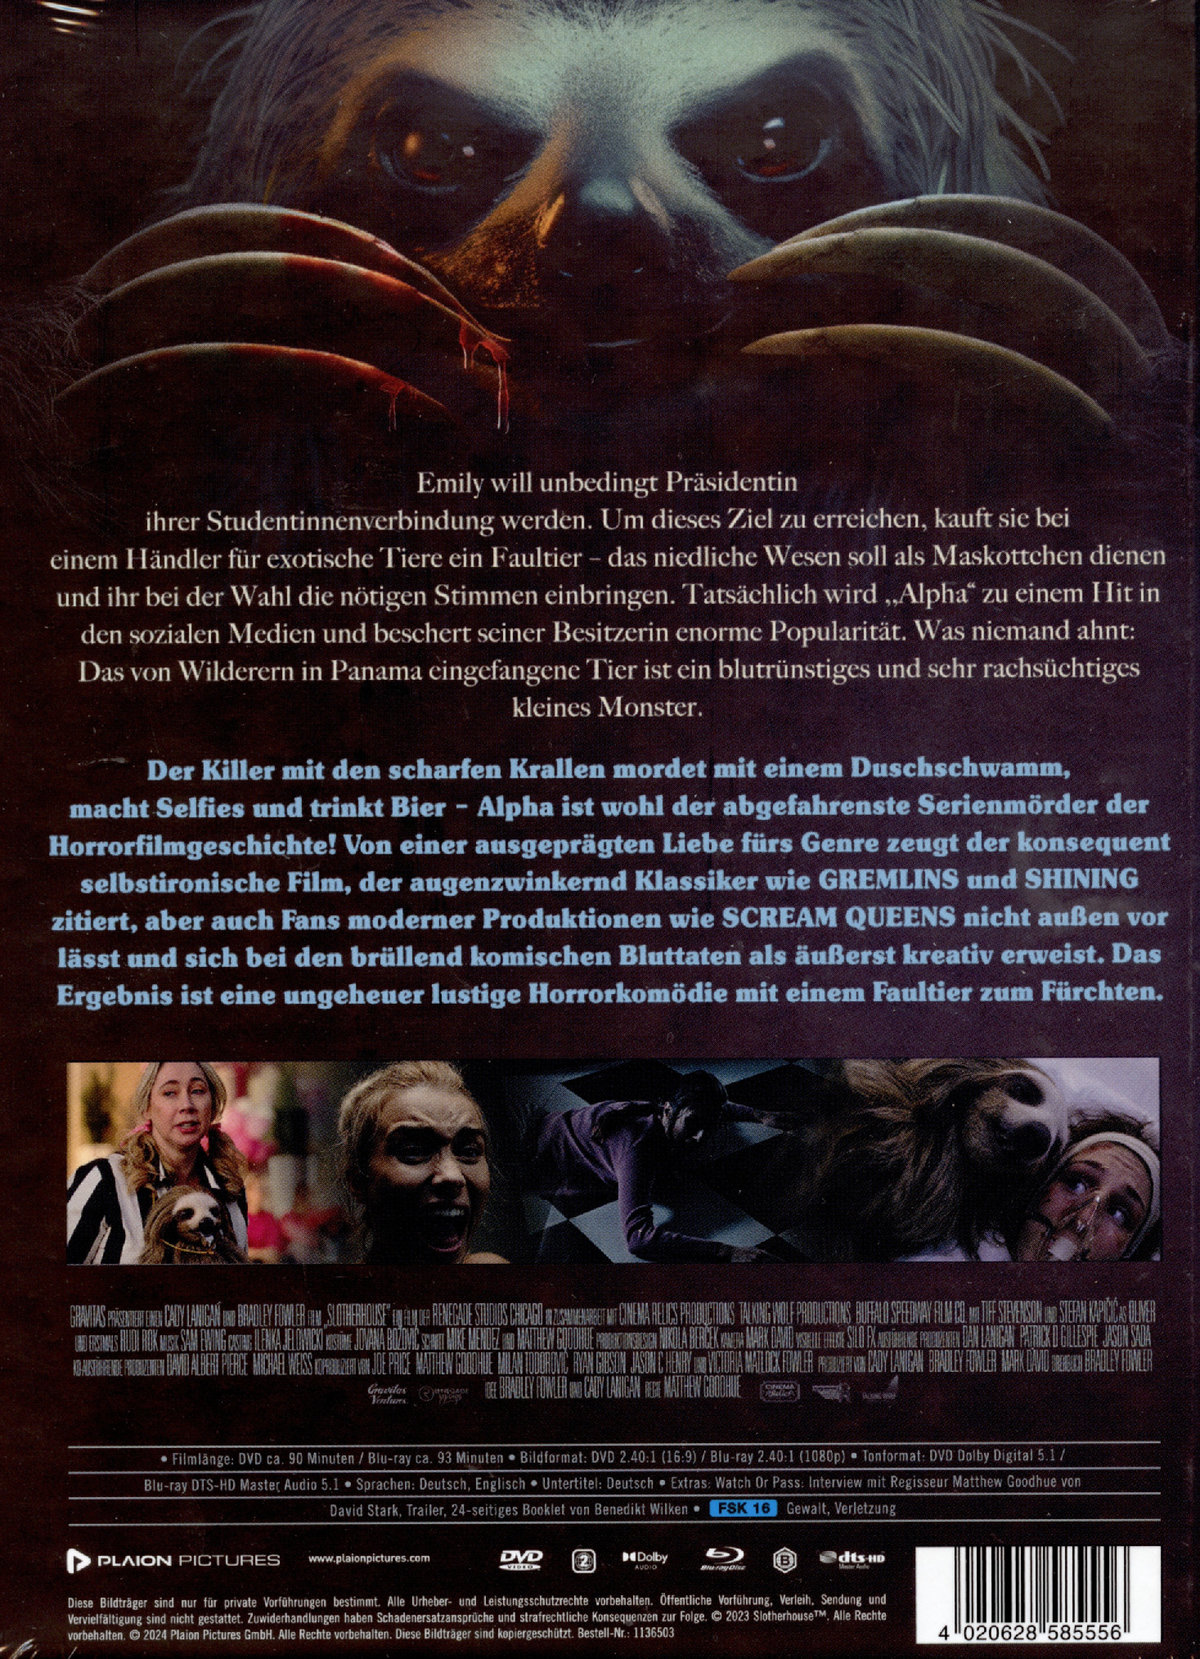 Slotherhouse - Ein Faultier zum Fürchten - Uncut Mediabook Edition (DVD+blu-ray)